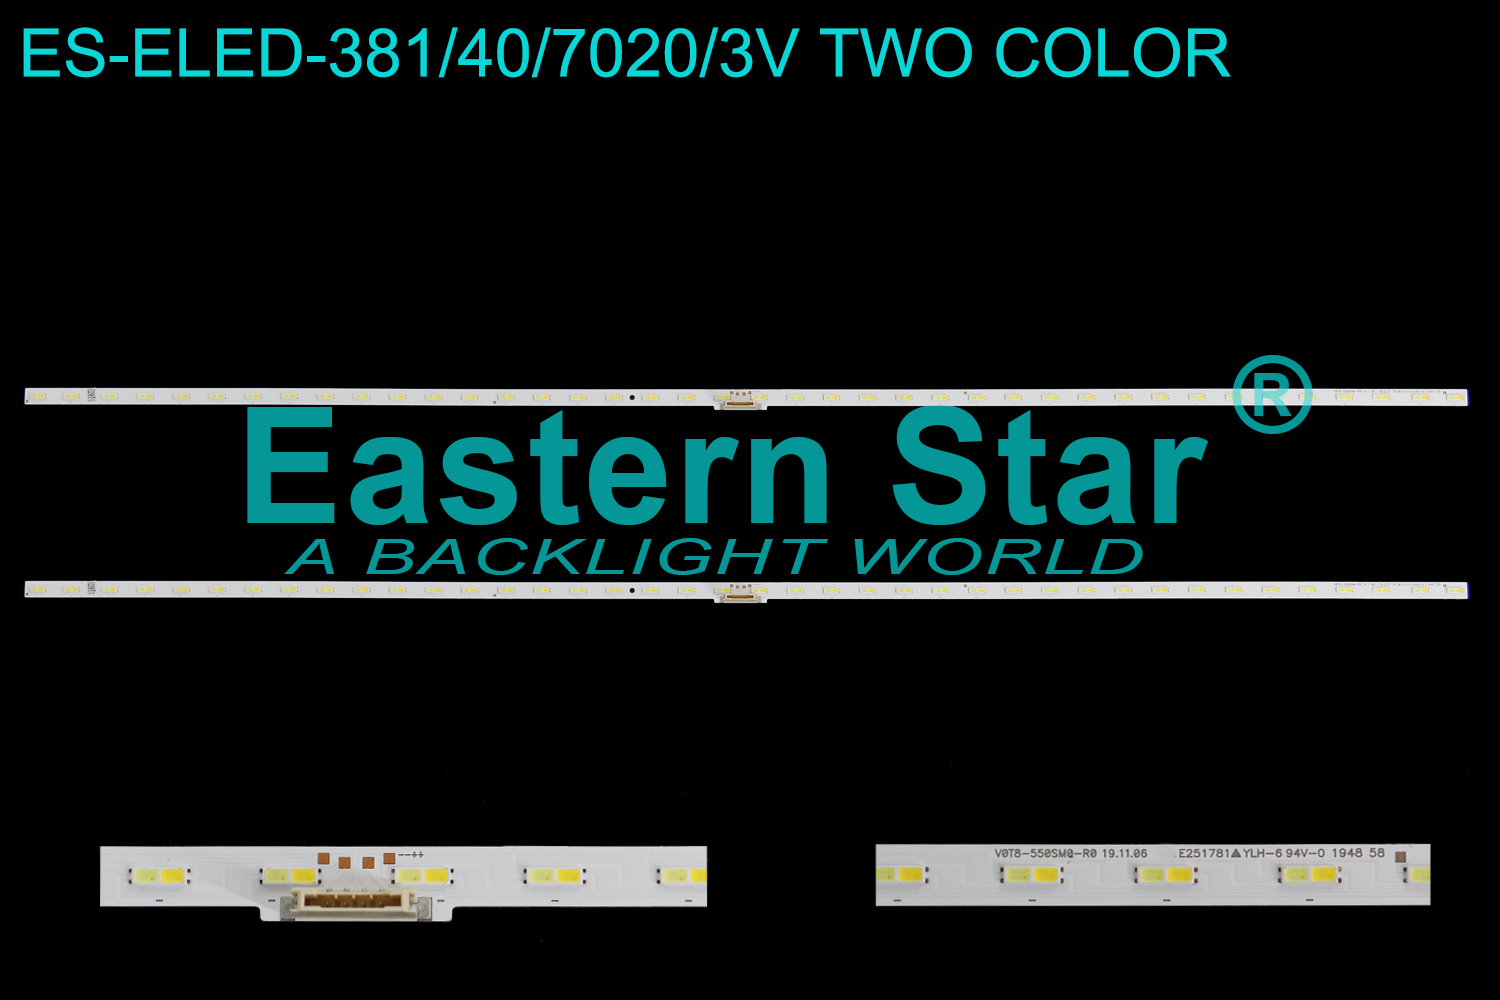 ES-ELED-381 ELED/EDGE TV backlight use for 55'' Samsung  UN55TU850DFXZA BN96-50379A V0T8-550SM0-R0 19.11.06 sj-BN96-50379A LED STRIPS(2)